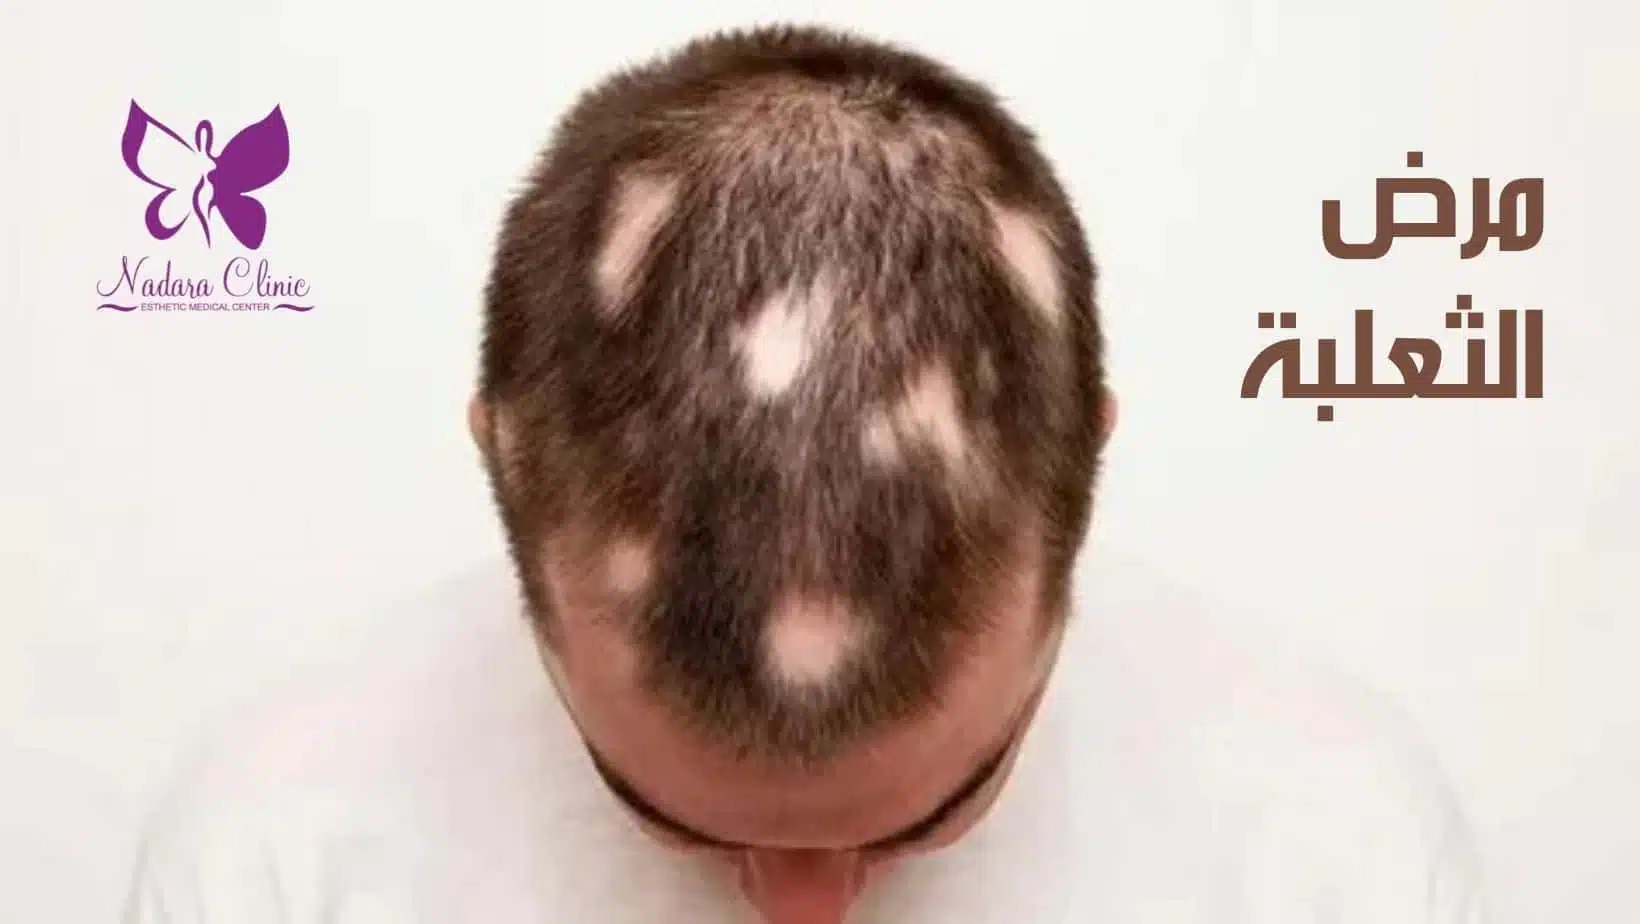 alopecia areata